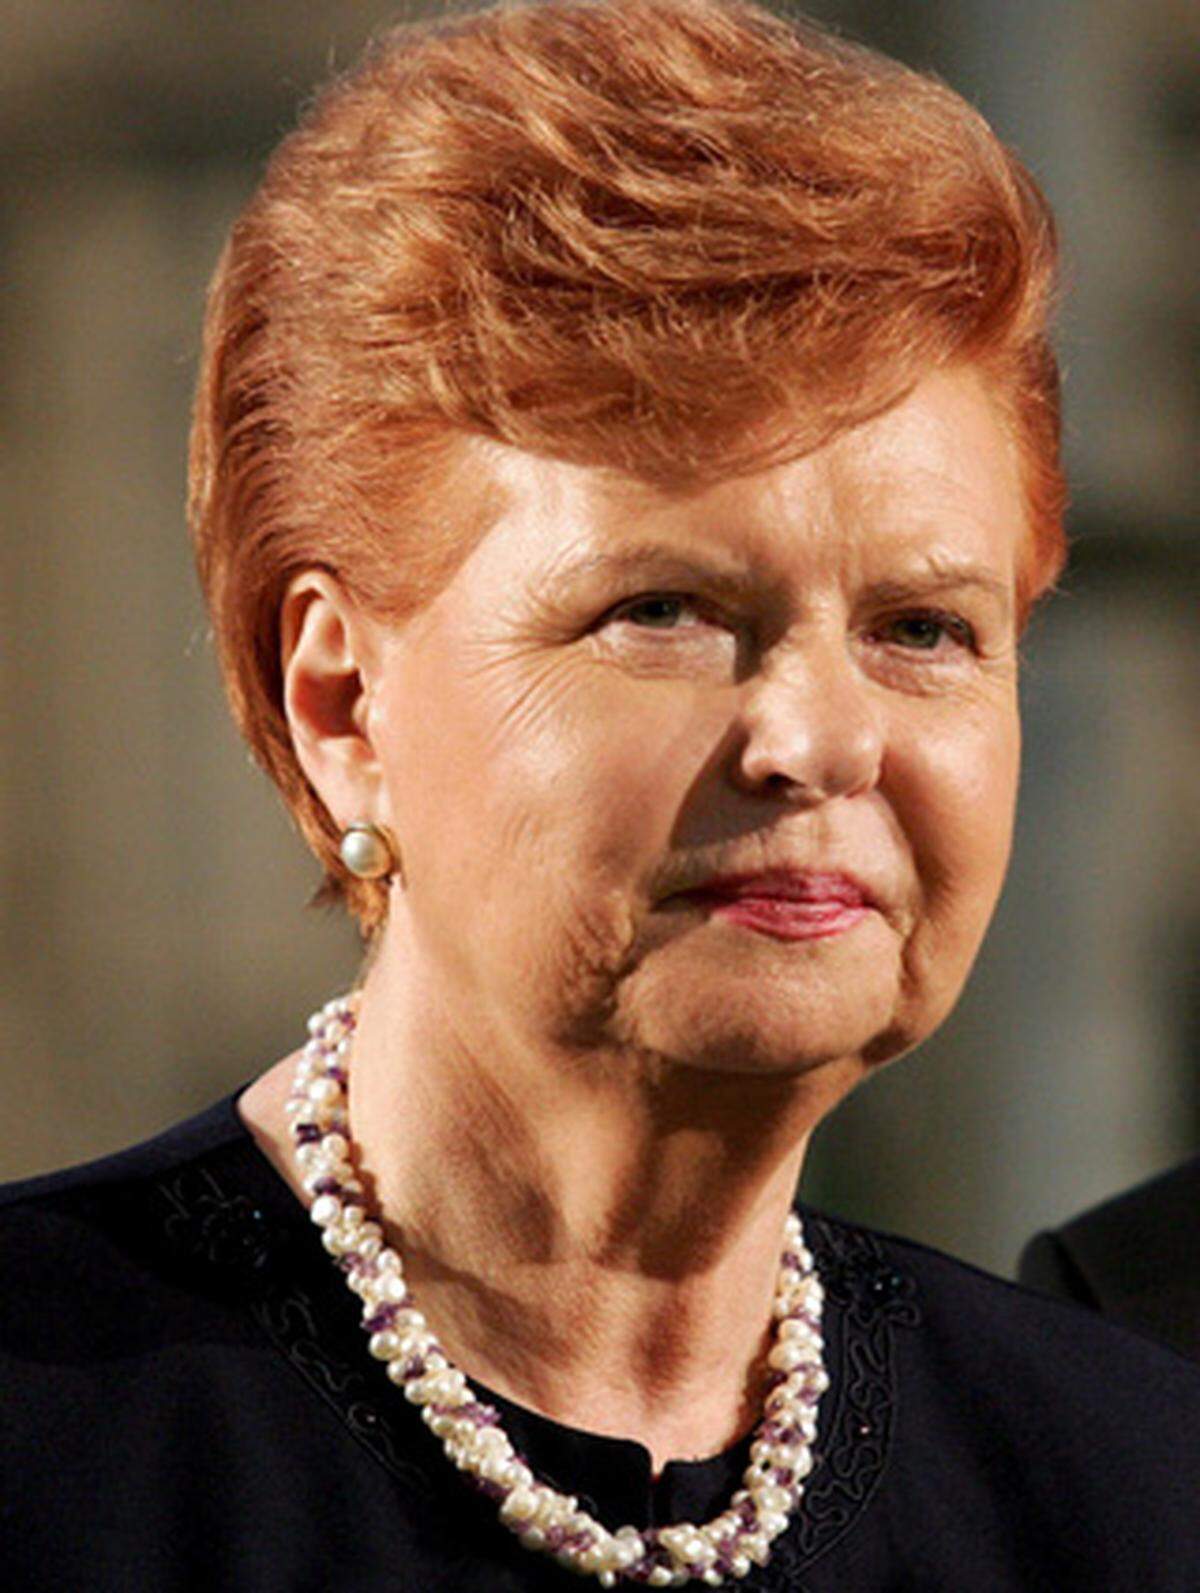 Die frühere lettische Präsidentin (1999-2007) gilt als "Eiserne Lady des Ostens" und wird vor allem von osteuropäischen Staaten ins Spiel gebracht. Während der Sowjetzeit lebte sie in Kanada. Unter ihrer Präsidentschaft trat Lettland der EU und der NATO bei. Auch sie war eine Verfechterin des Irak-Kriegs.